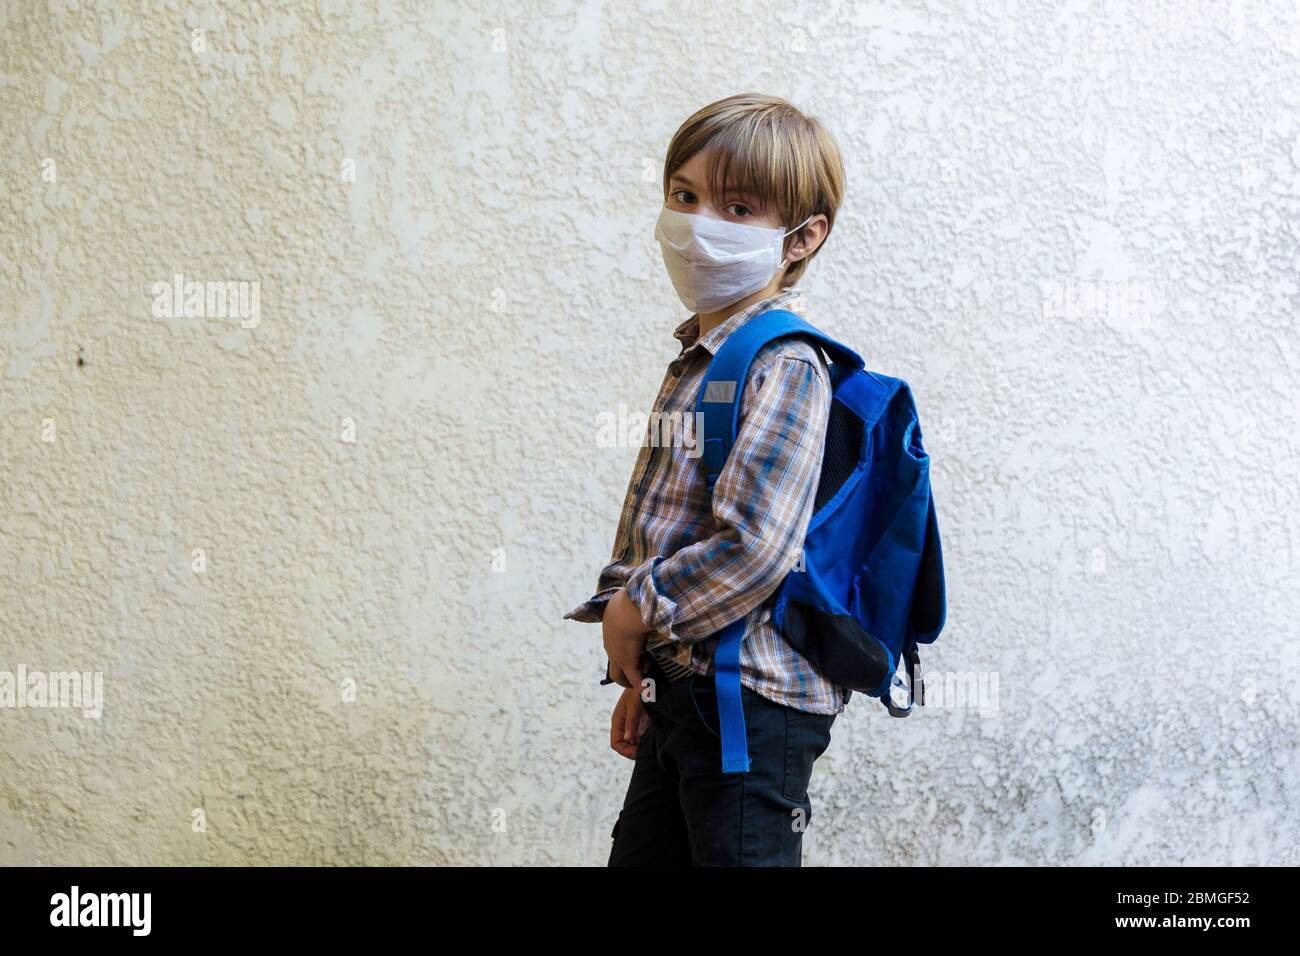 Brote coronavirus, Covid-19: Ilustración de la reapertura de escuelas. El escolar va a la escuela con una mochila y una máscara protectora el 30 de abril, Foto de stock